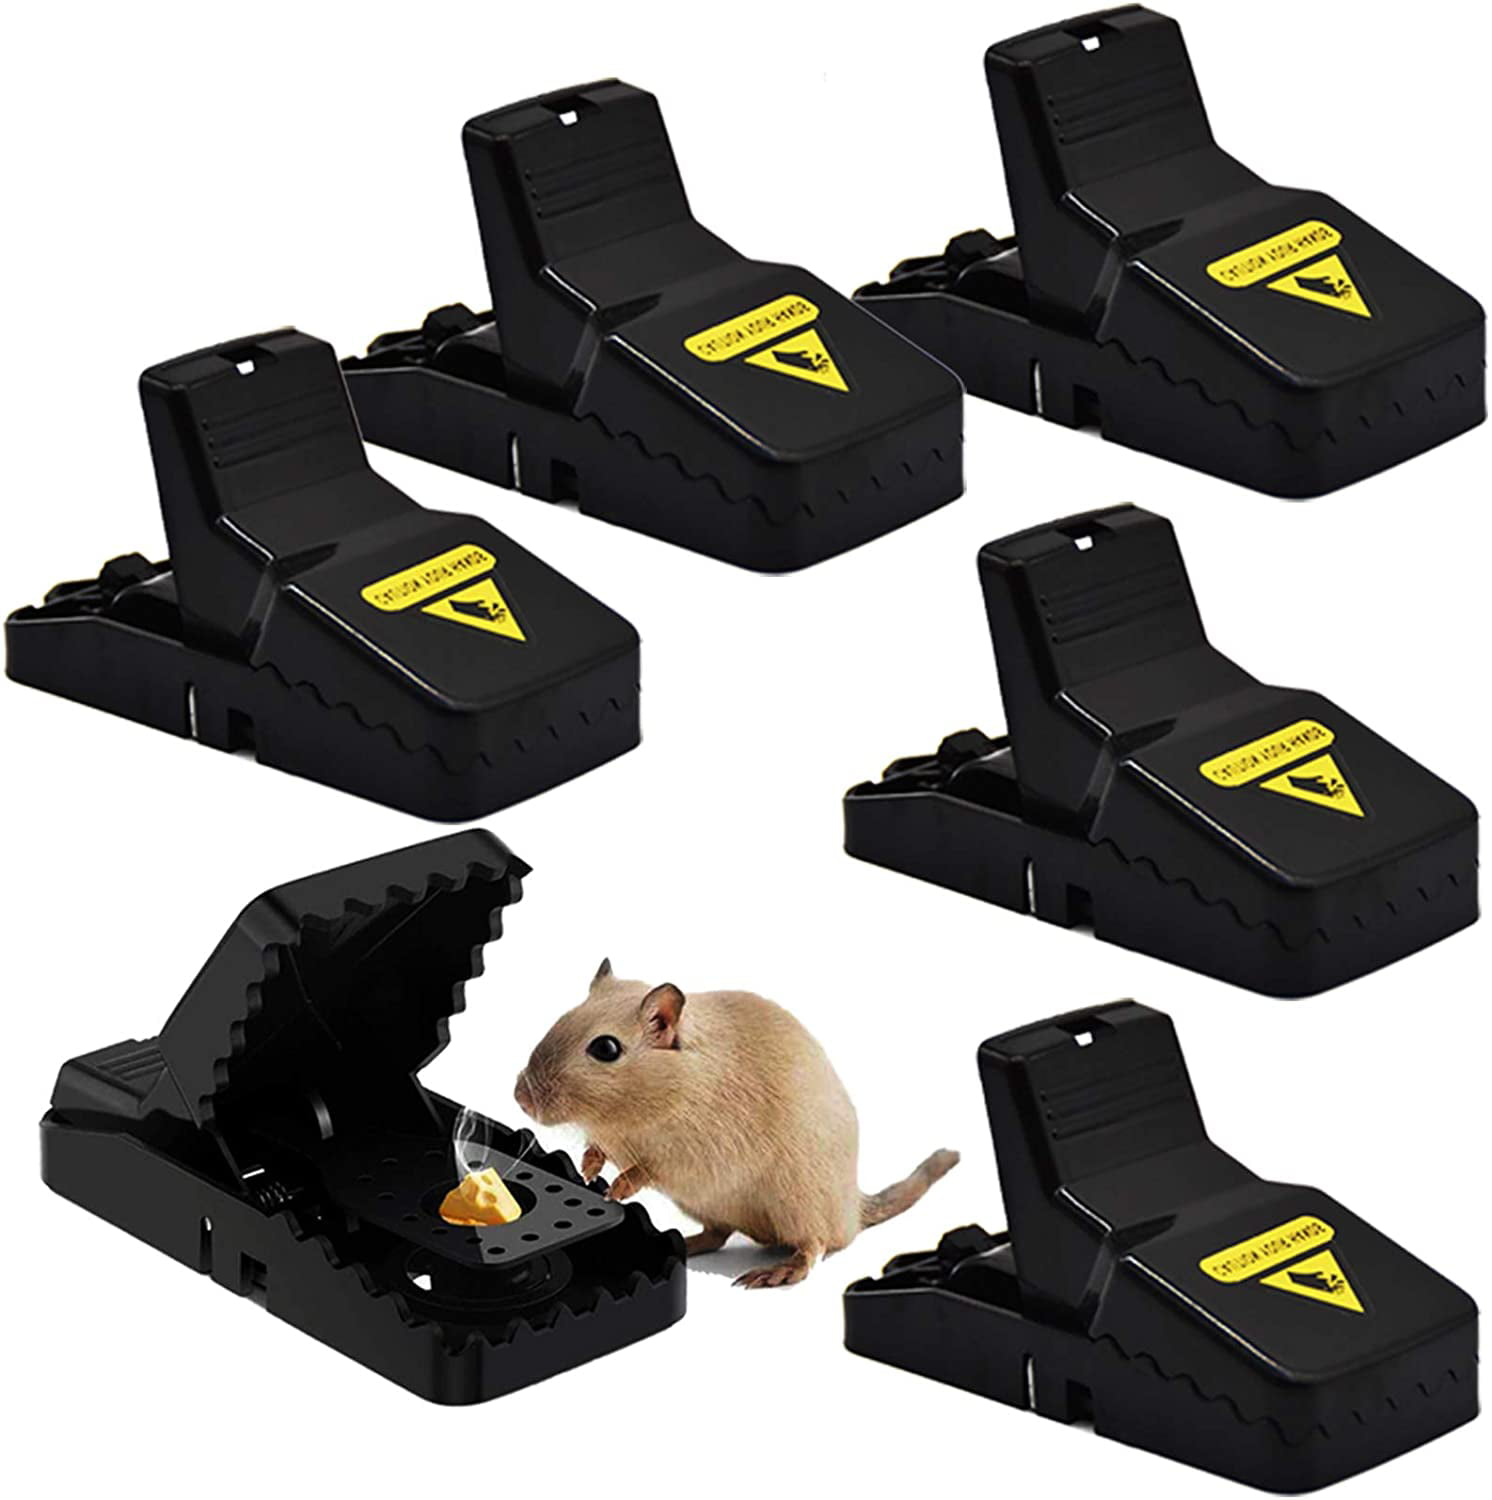 2PCS Reusable Catching Mice Mouse Traps Mousetrap Bait Snap Spring shan 